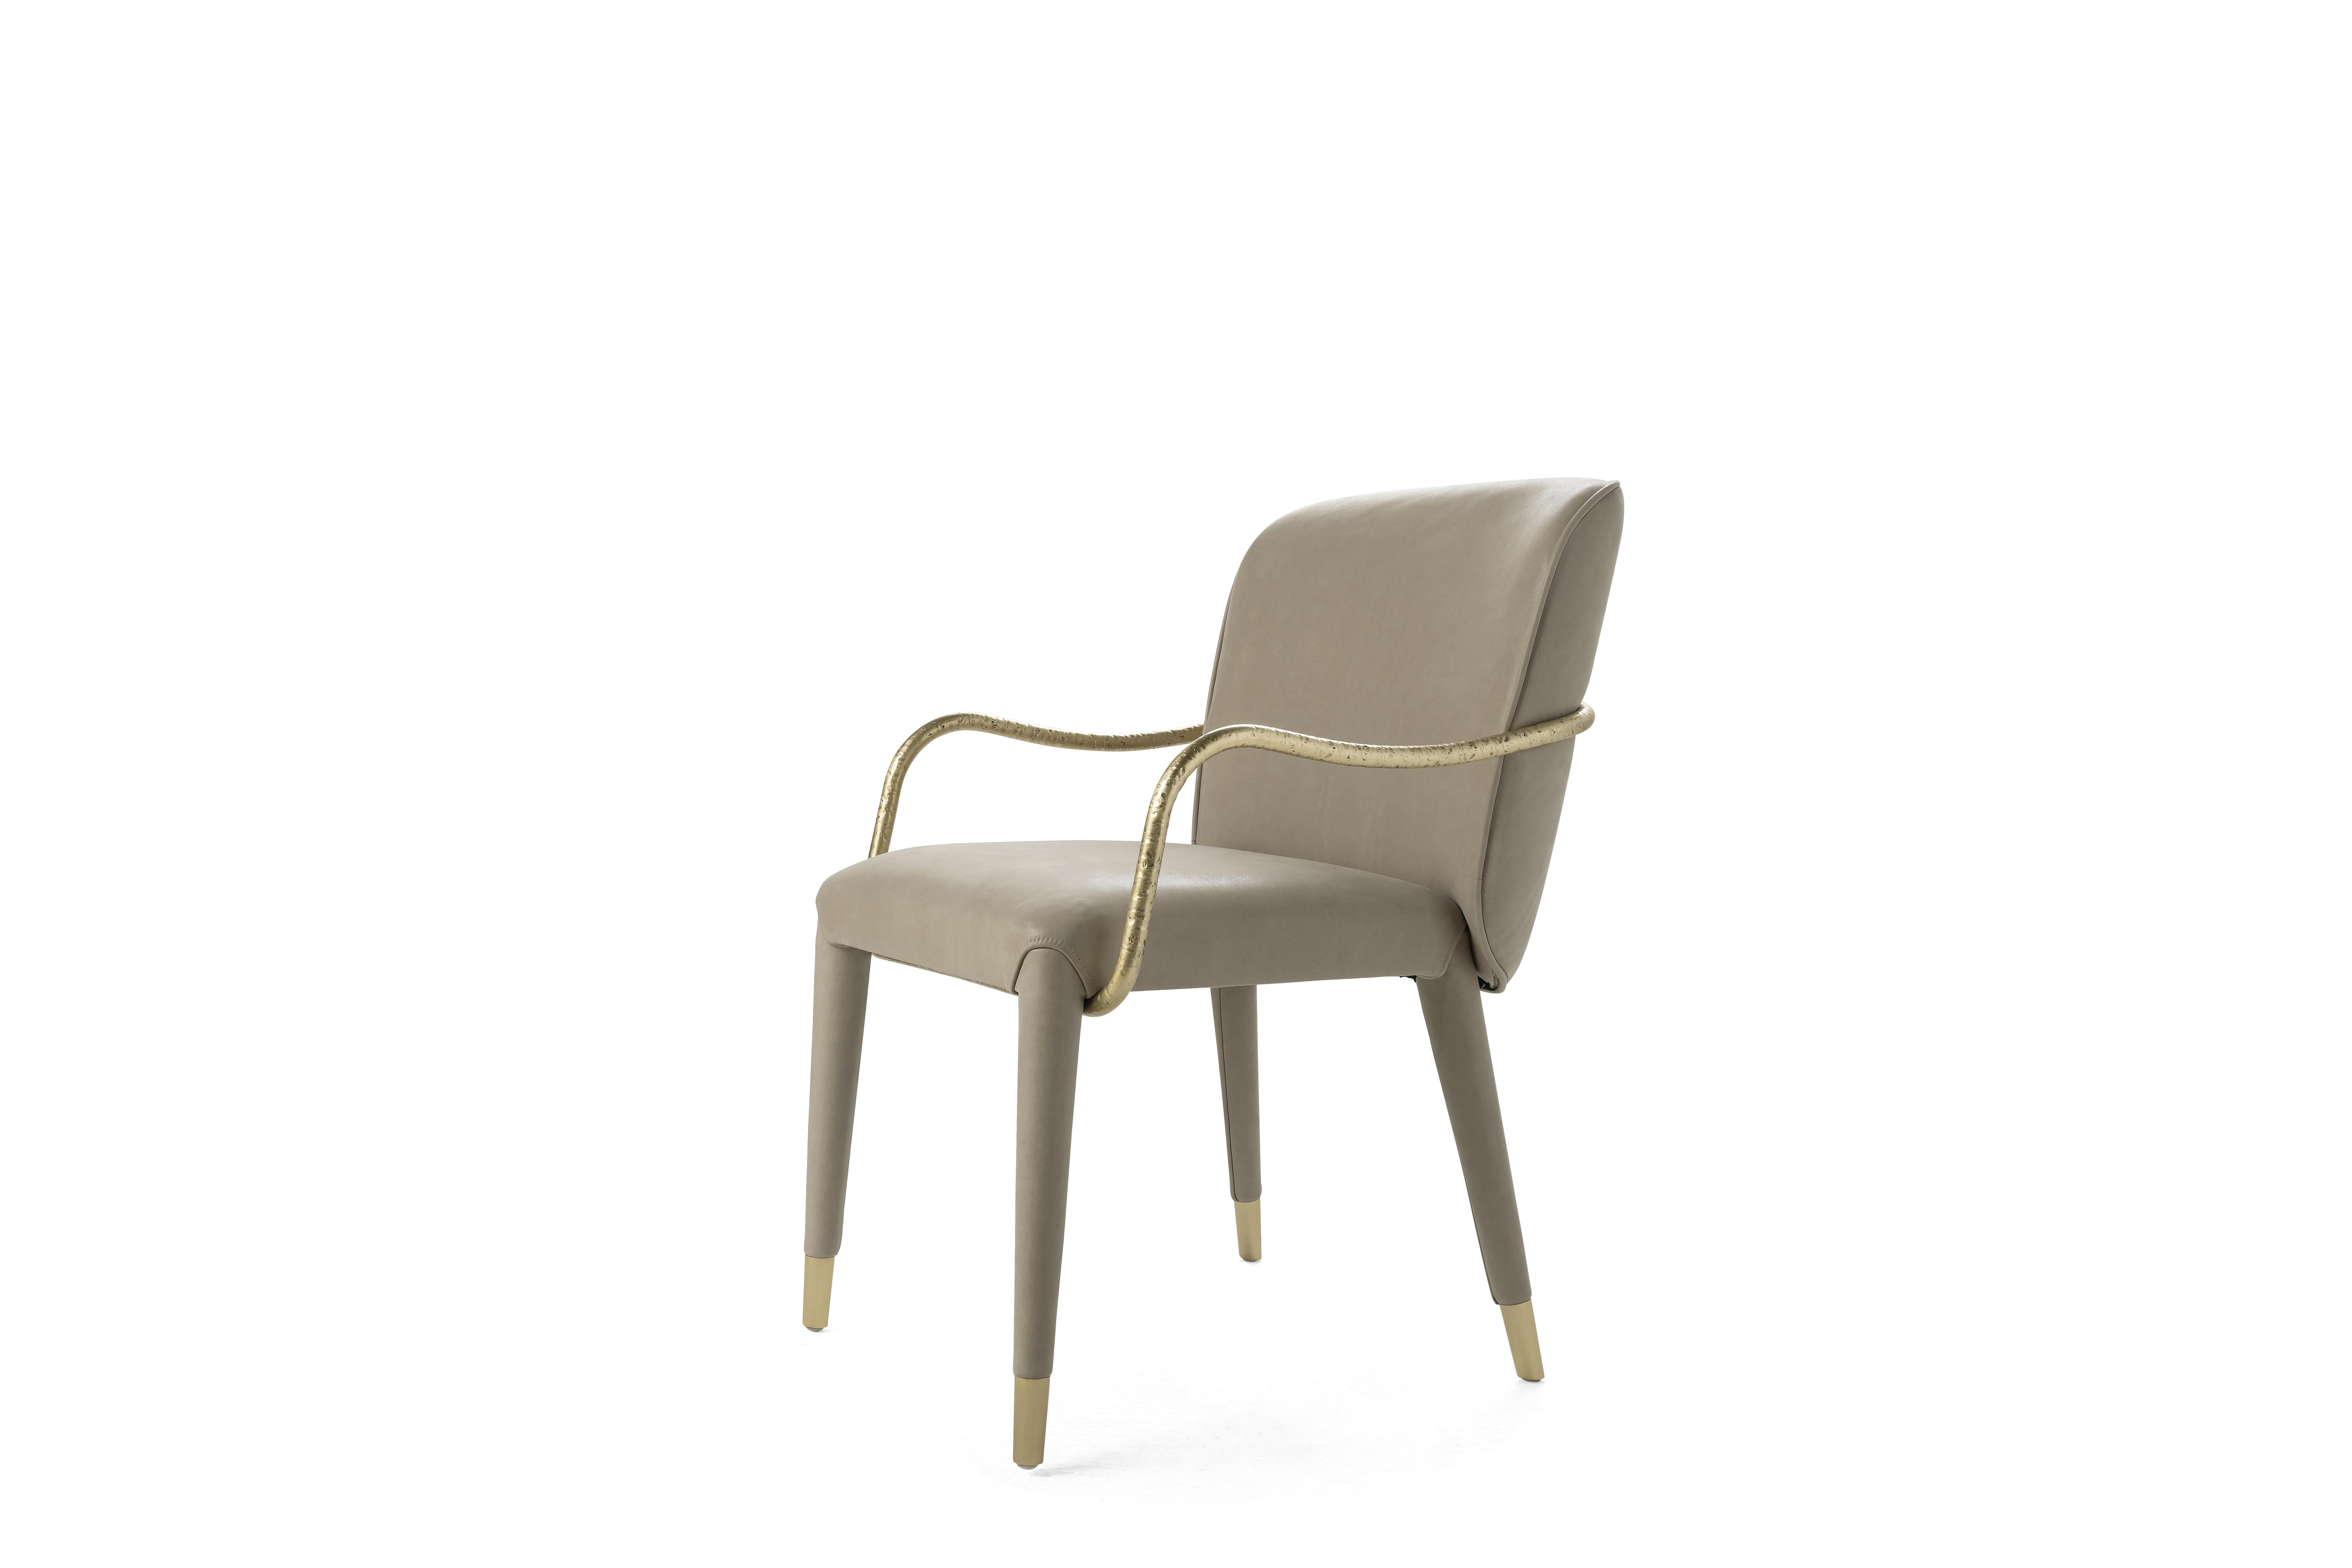 Ein schlankes und essentielles Design für den Kivu-Stuhl. Die dünne Metallarmlehne, die sich um die Struktur dreht, zeichnet sich durch eine besondere gehämmerte Oberfläche aus, die dem Ganzen einen rauen und natürlichen Effekt verleiht. Die